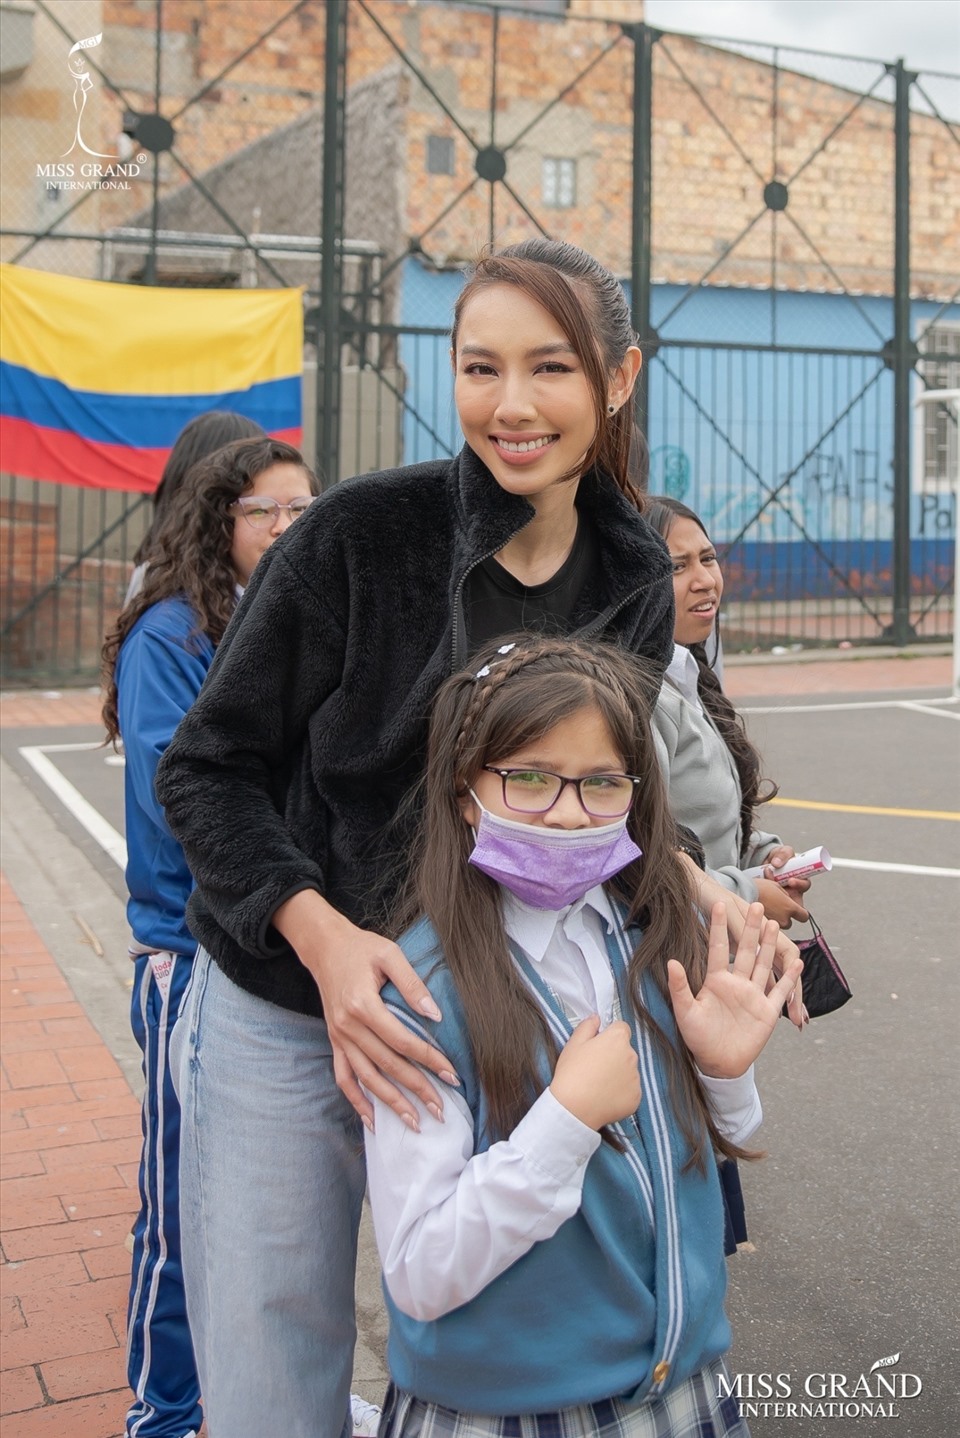 Người đẹp đã cùng chủ tịch Miss Grand International đến thăm và tham gia học tập ngoại khóa cùng các em nhỏ tại tổ chức từ thiện Fundacion Alfred Nobel thuộc Bogota - Thủ đô Colombia. Ảnh: NVCC.